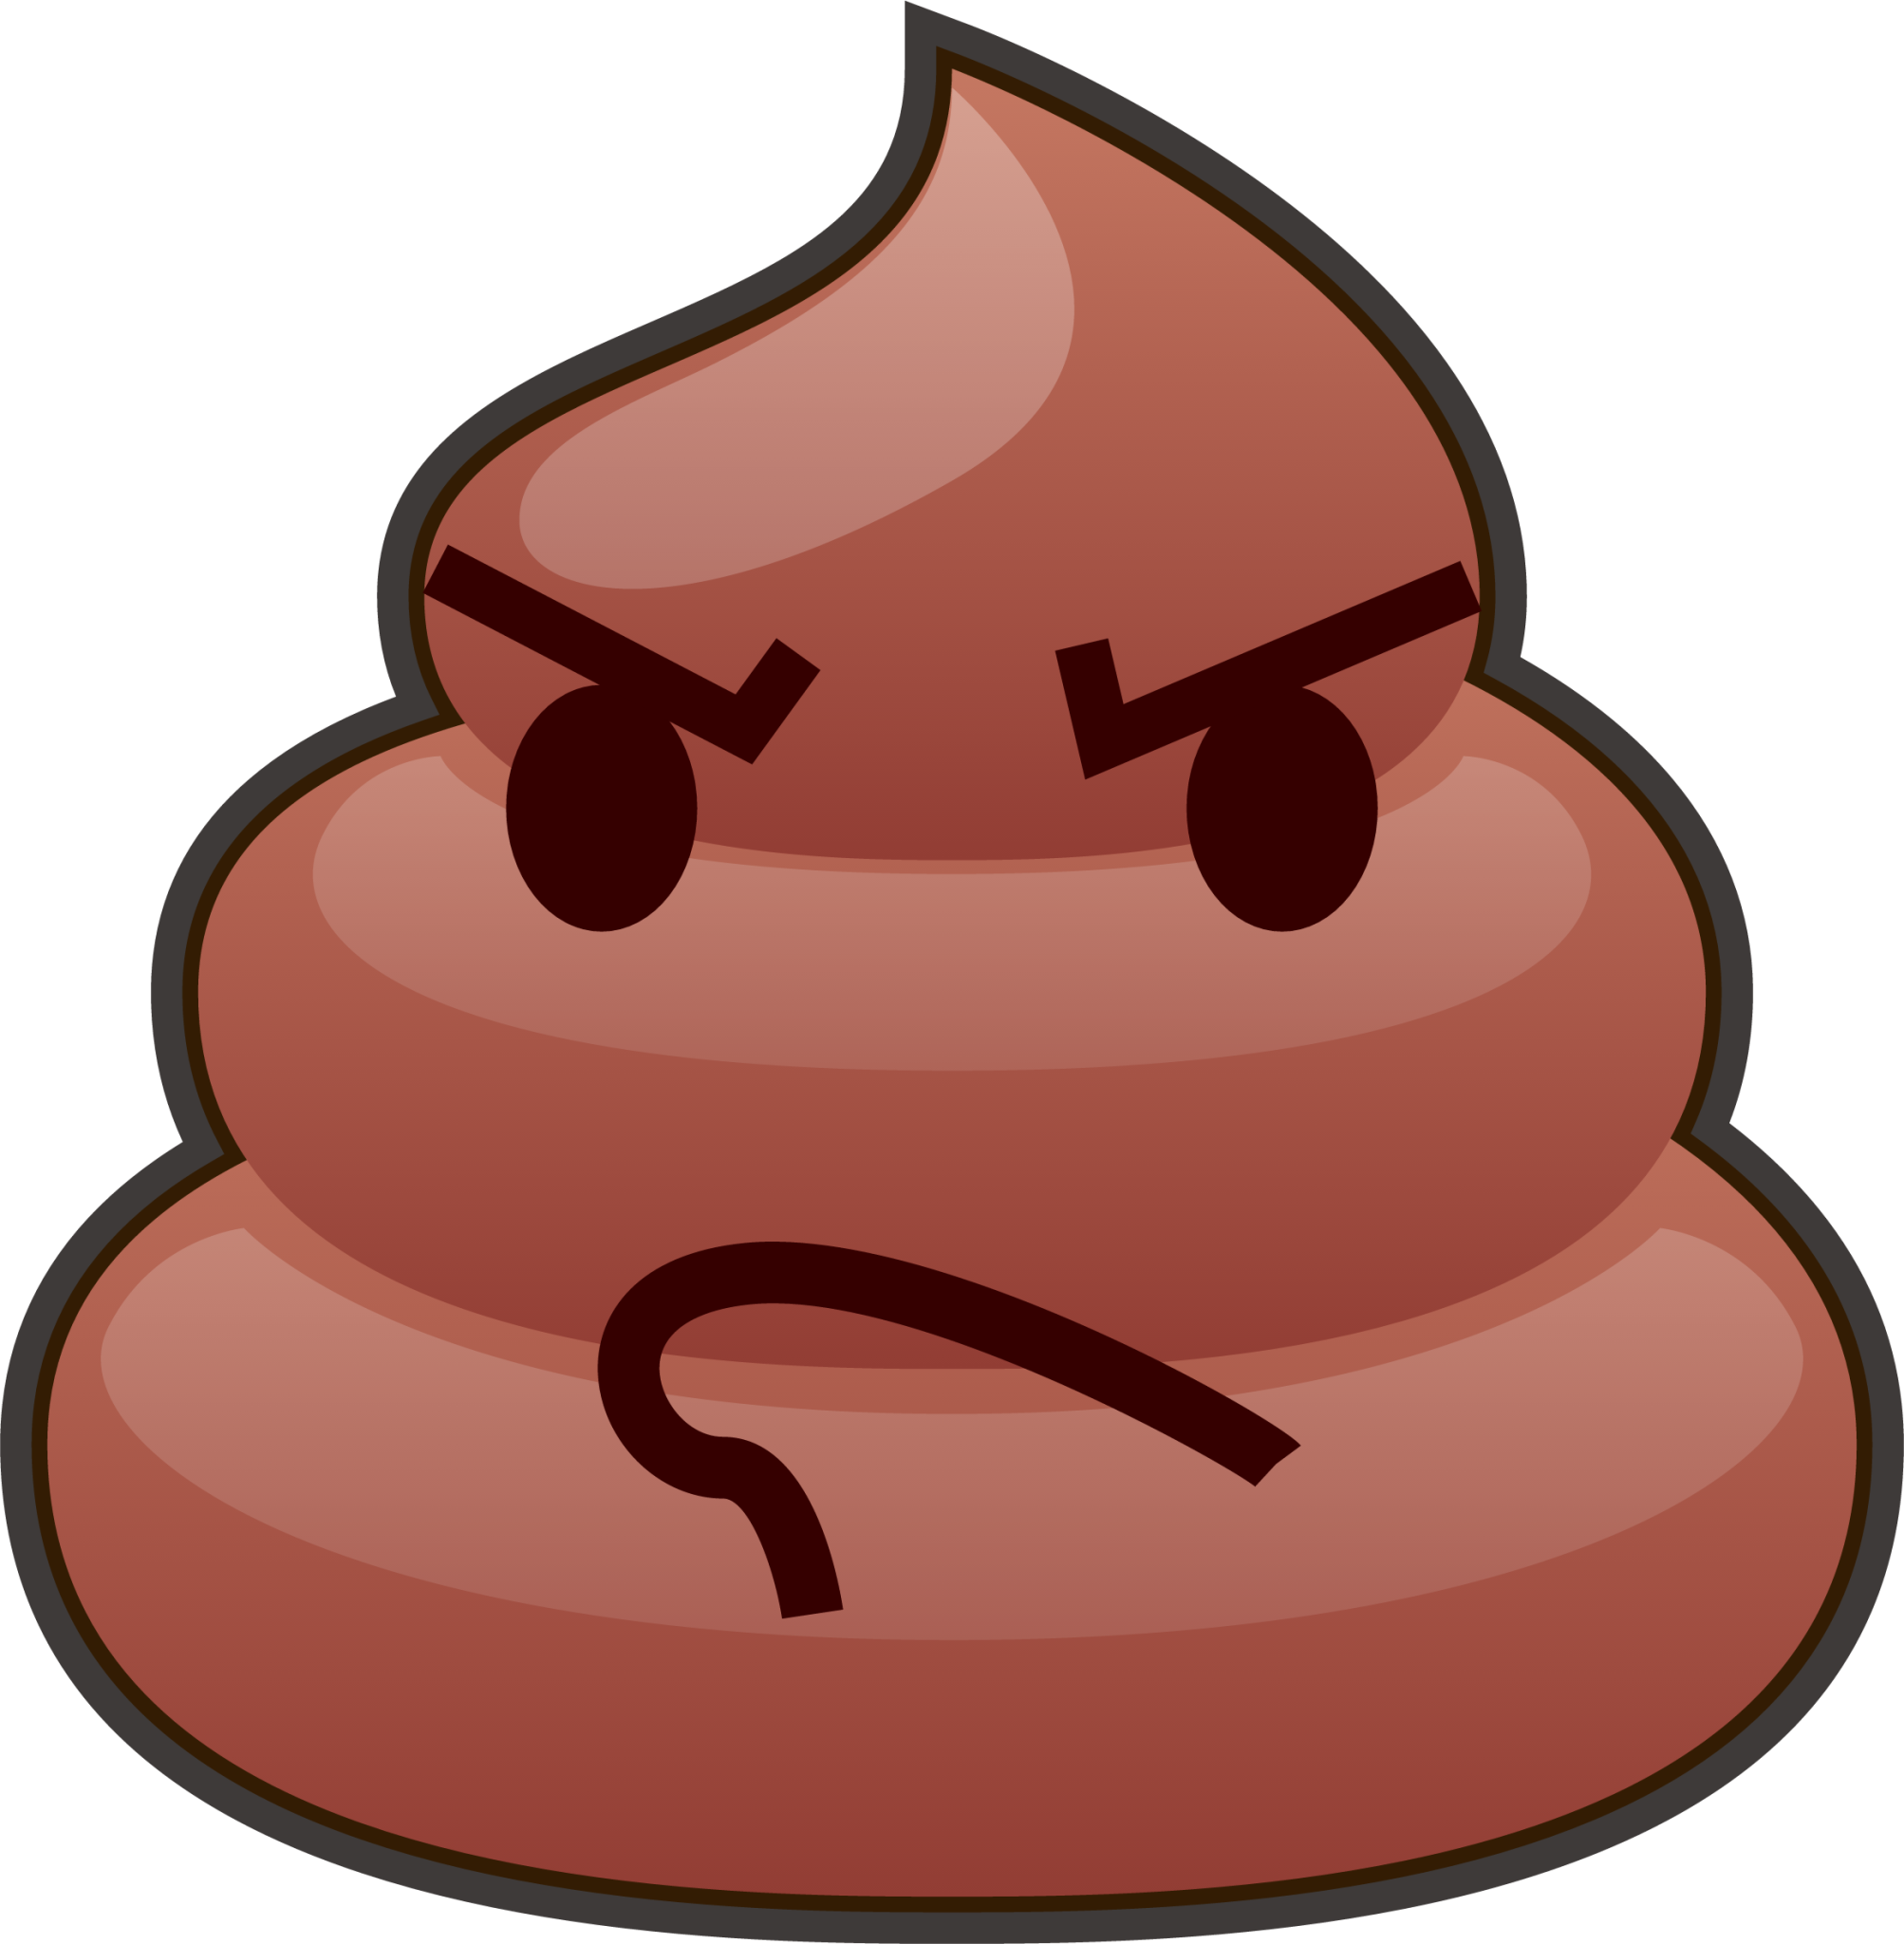 rage (poop) emoji